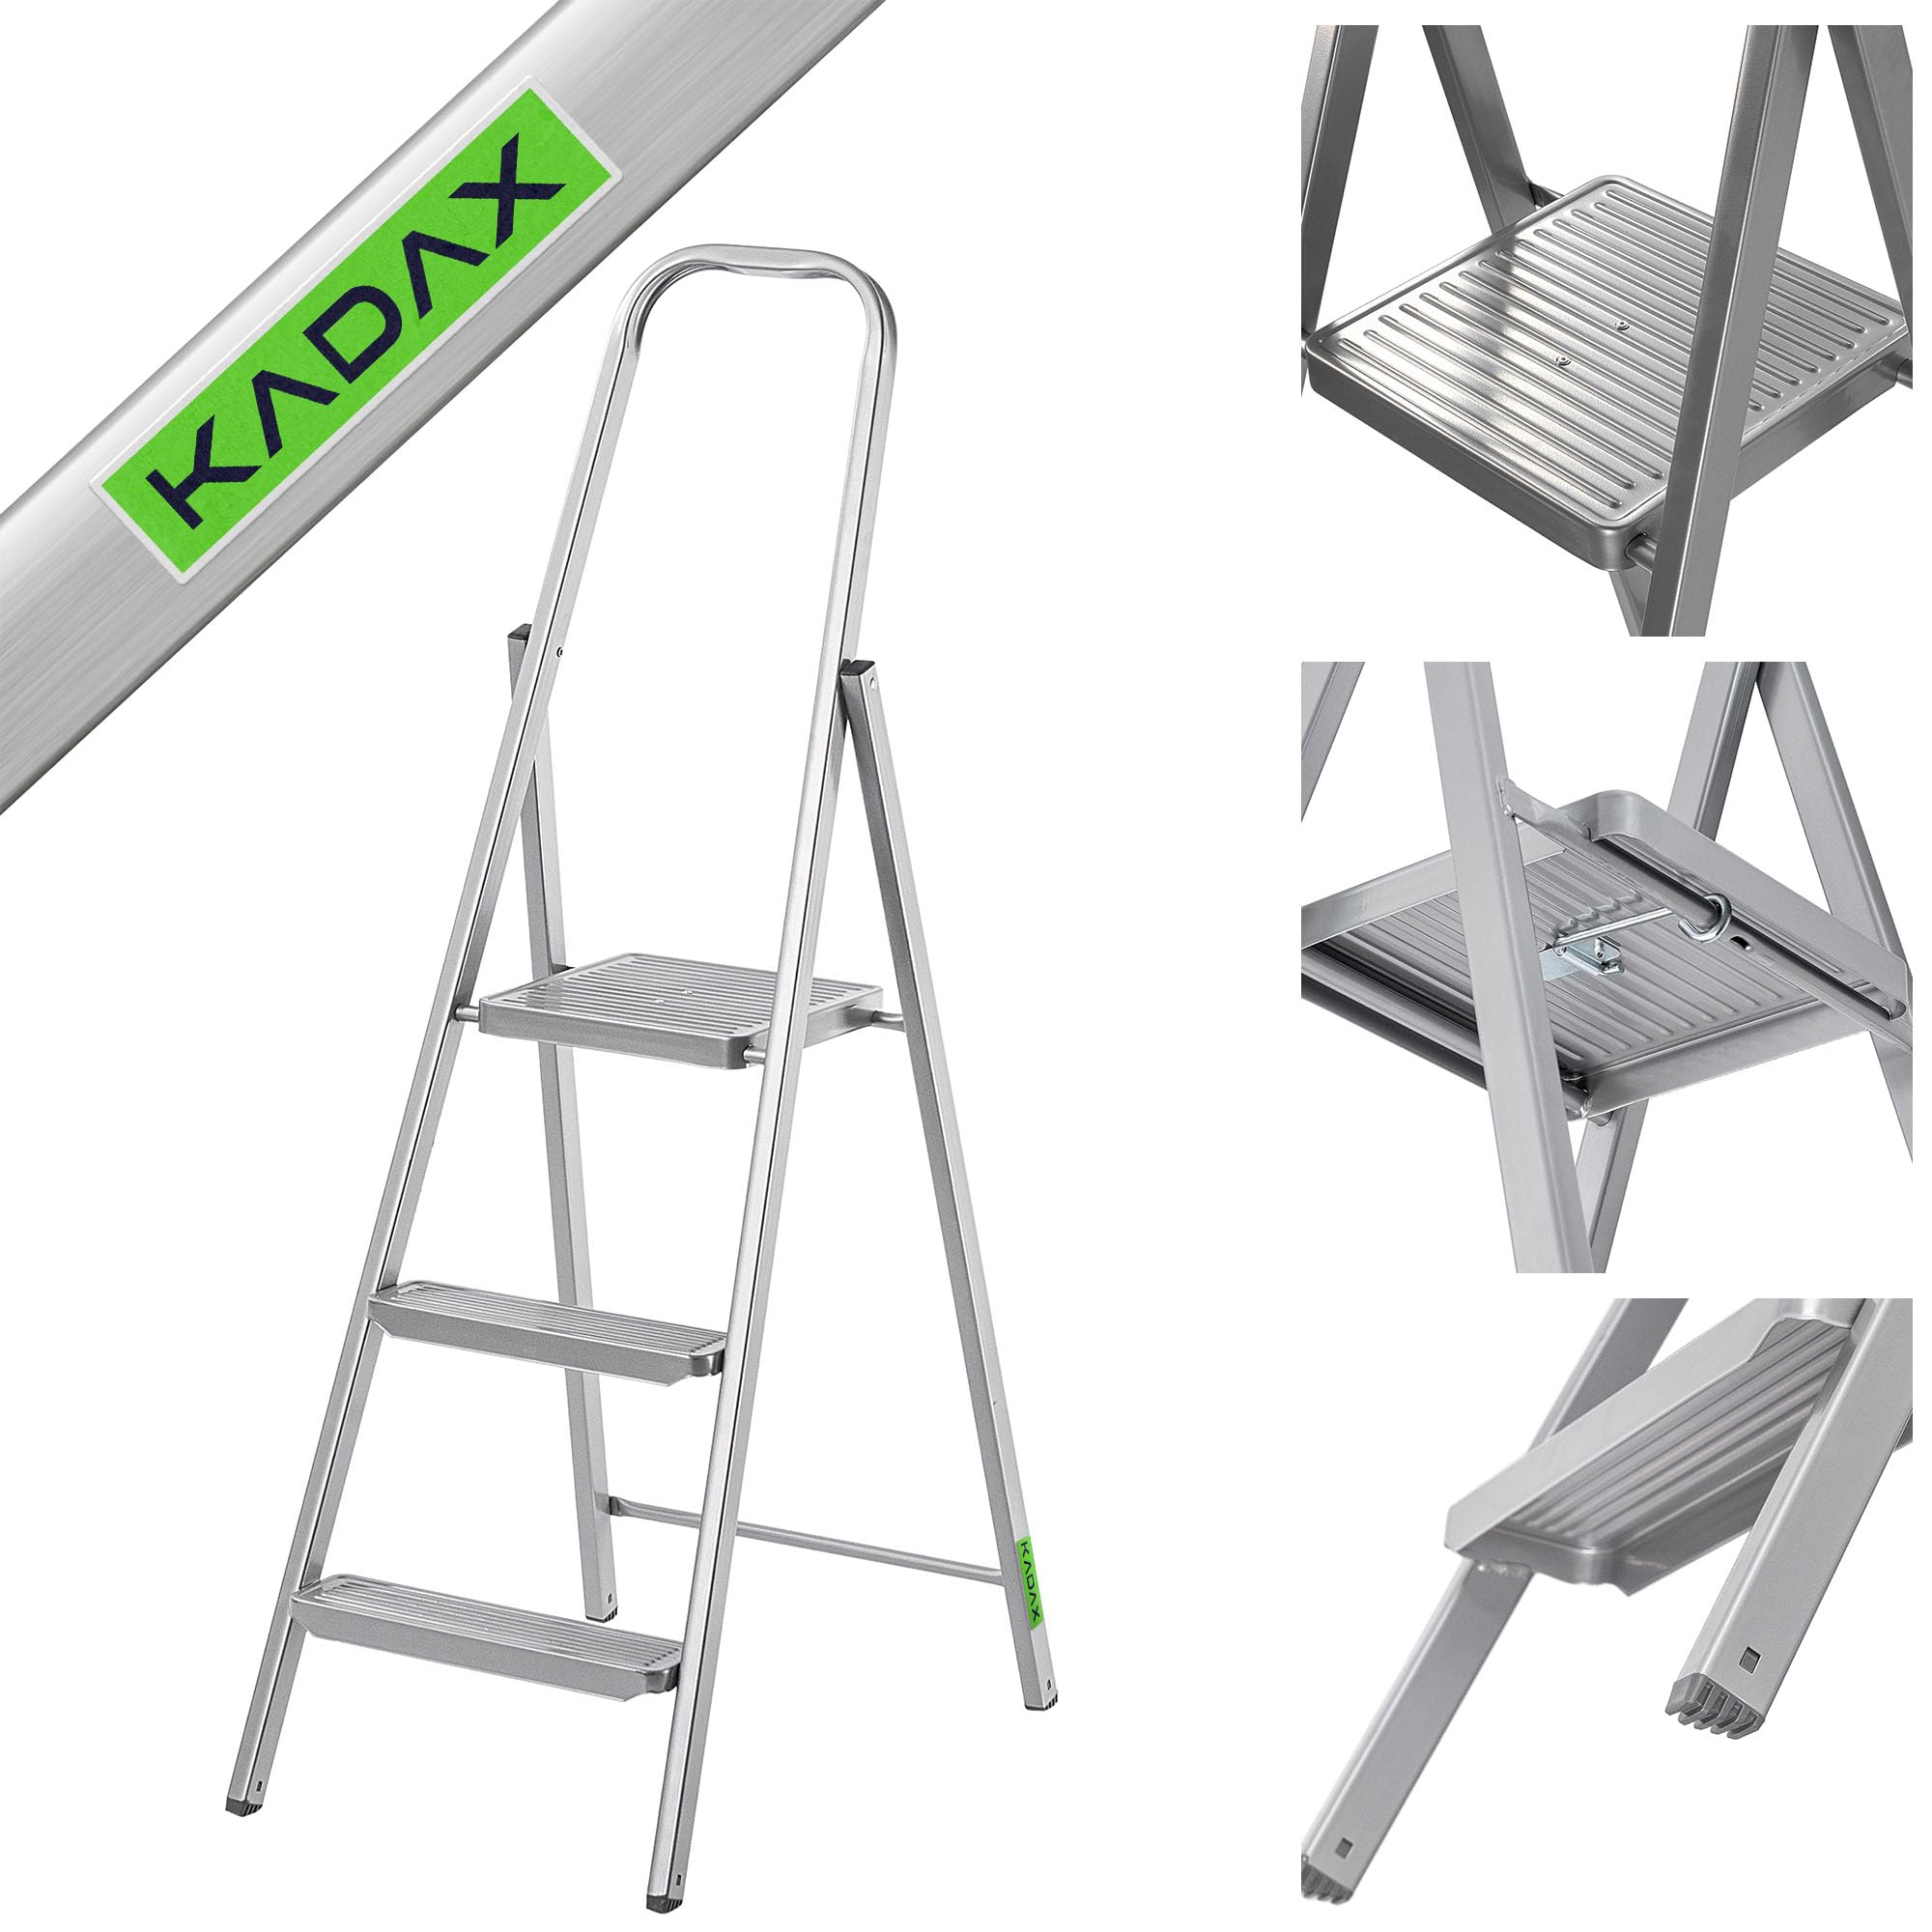 KADAX Einseitige Stahlleiter mit Antirutsch-Füßen, Stufenleiter, Leiter mit Ablage, Trittleiter, Klappleiter, Haushaltsleiter mit Breiten Stufen (3 Stufen)